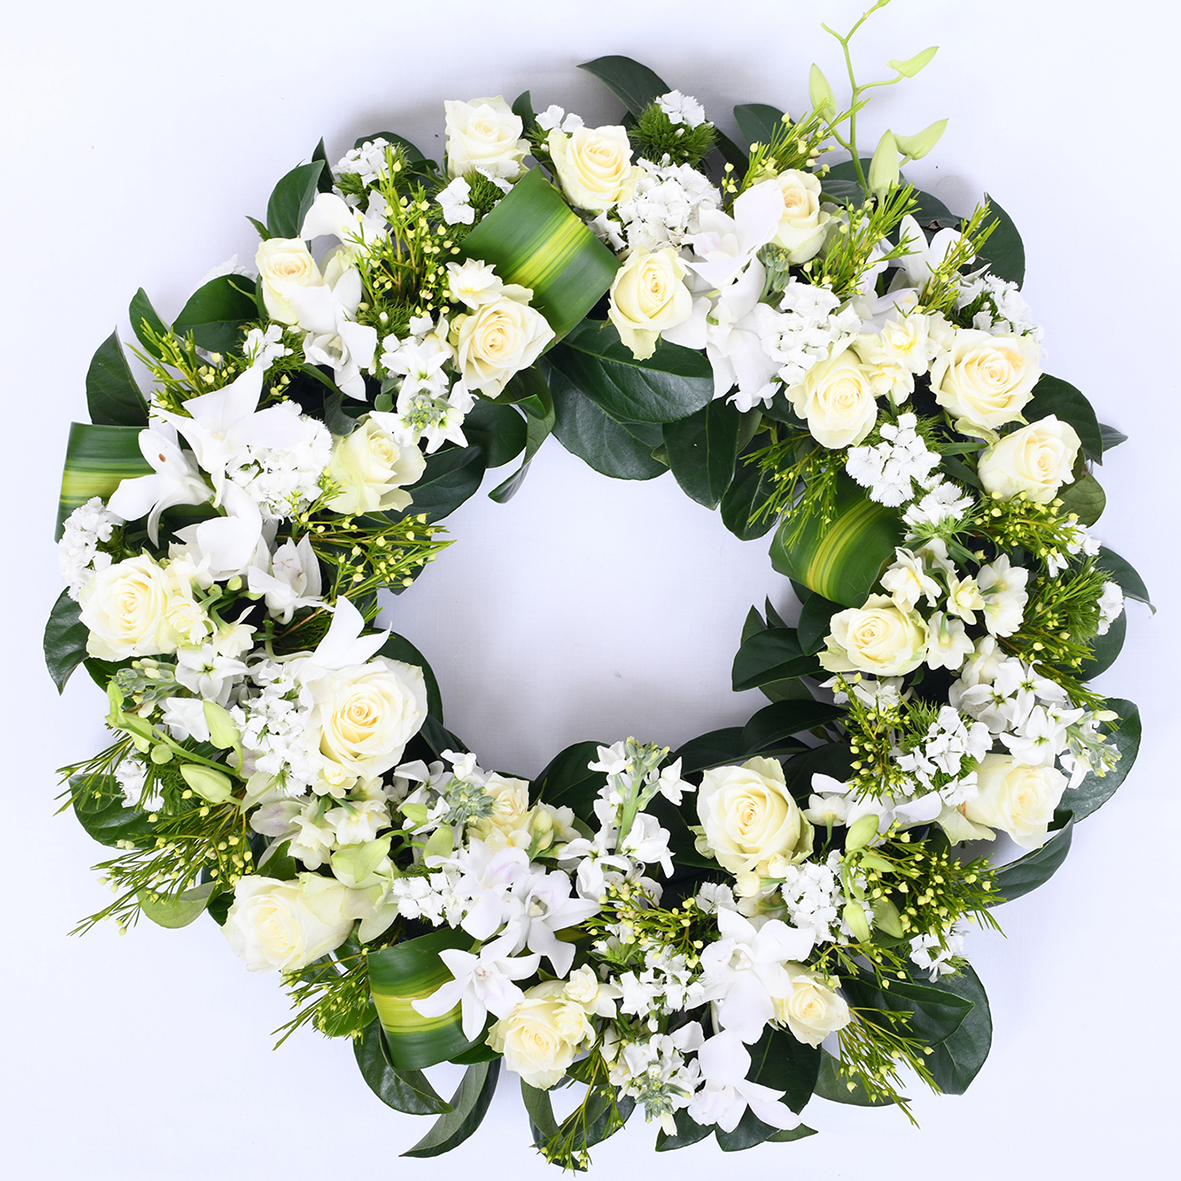 Funeral Sympathy Wreath 